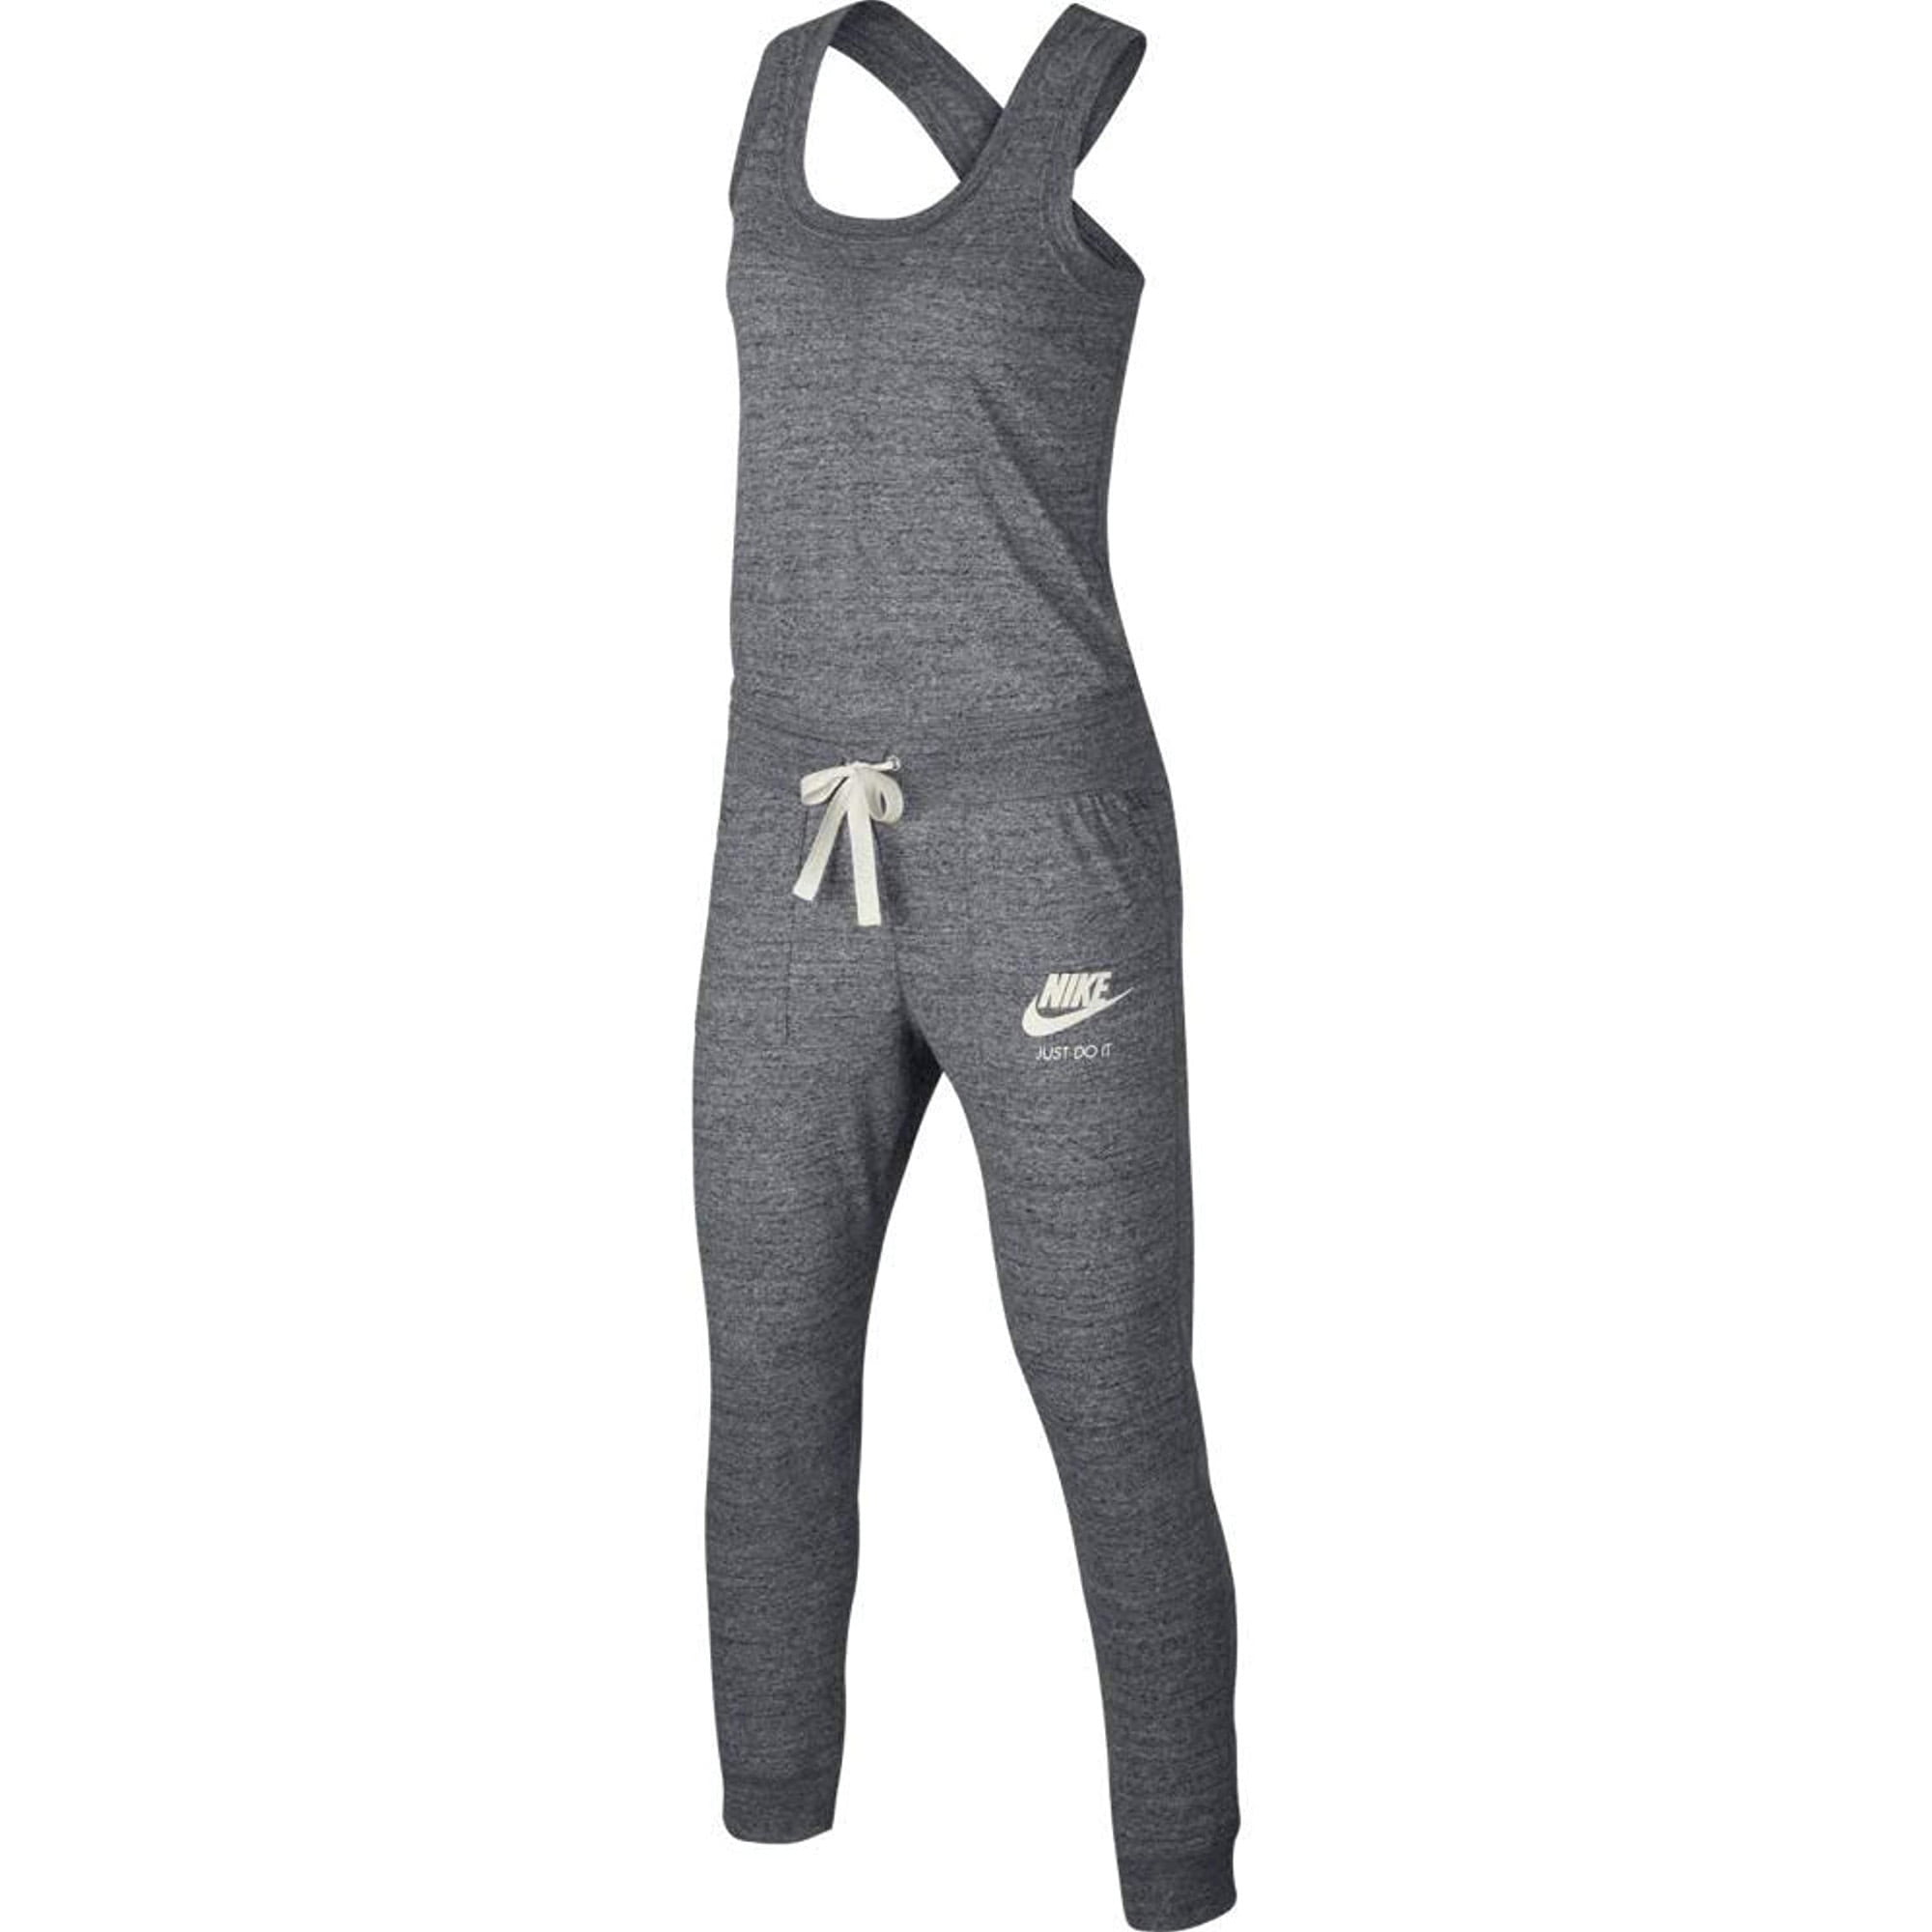 Nike Women's Sportswear Gym Vintage Romper Jumpsuit Grey 929172-091 